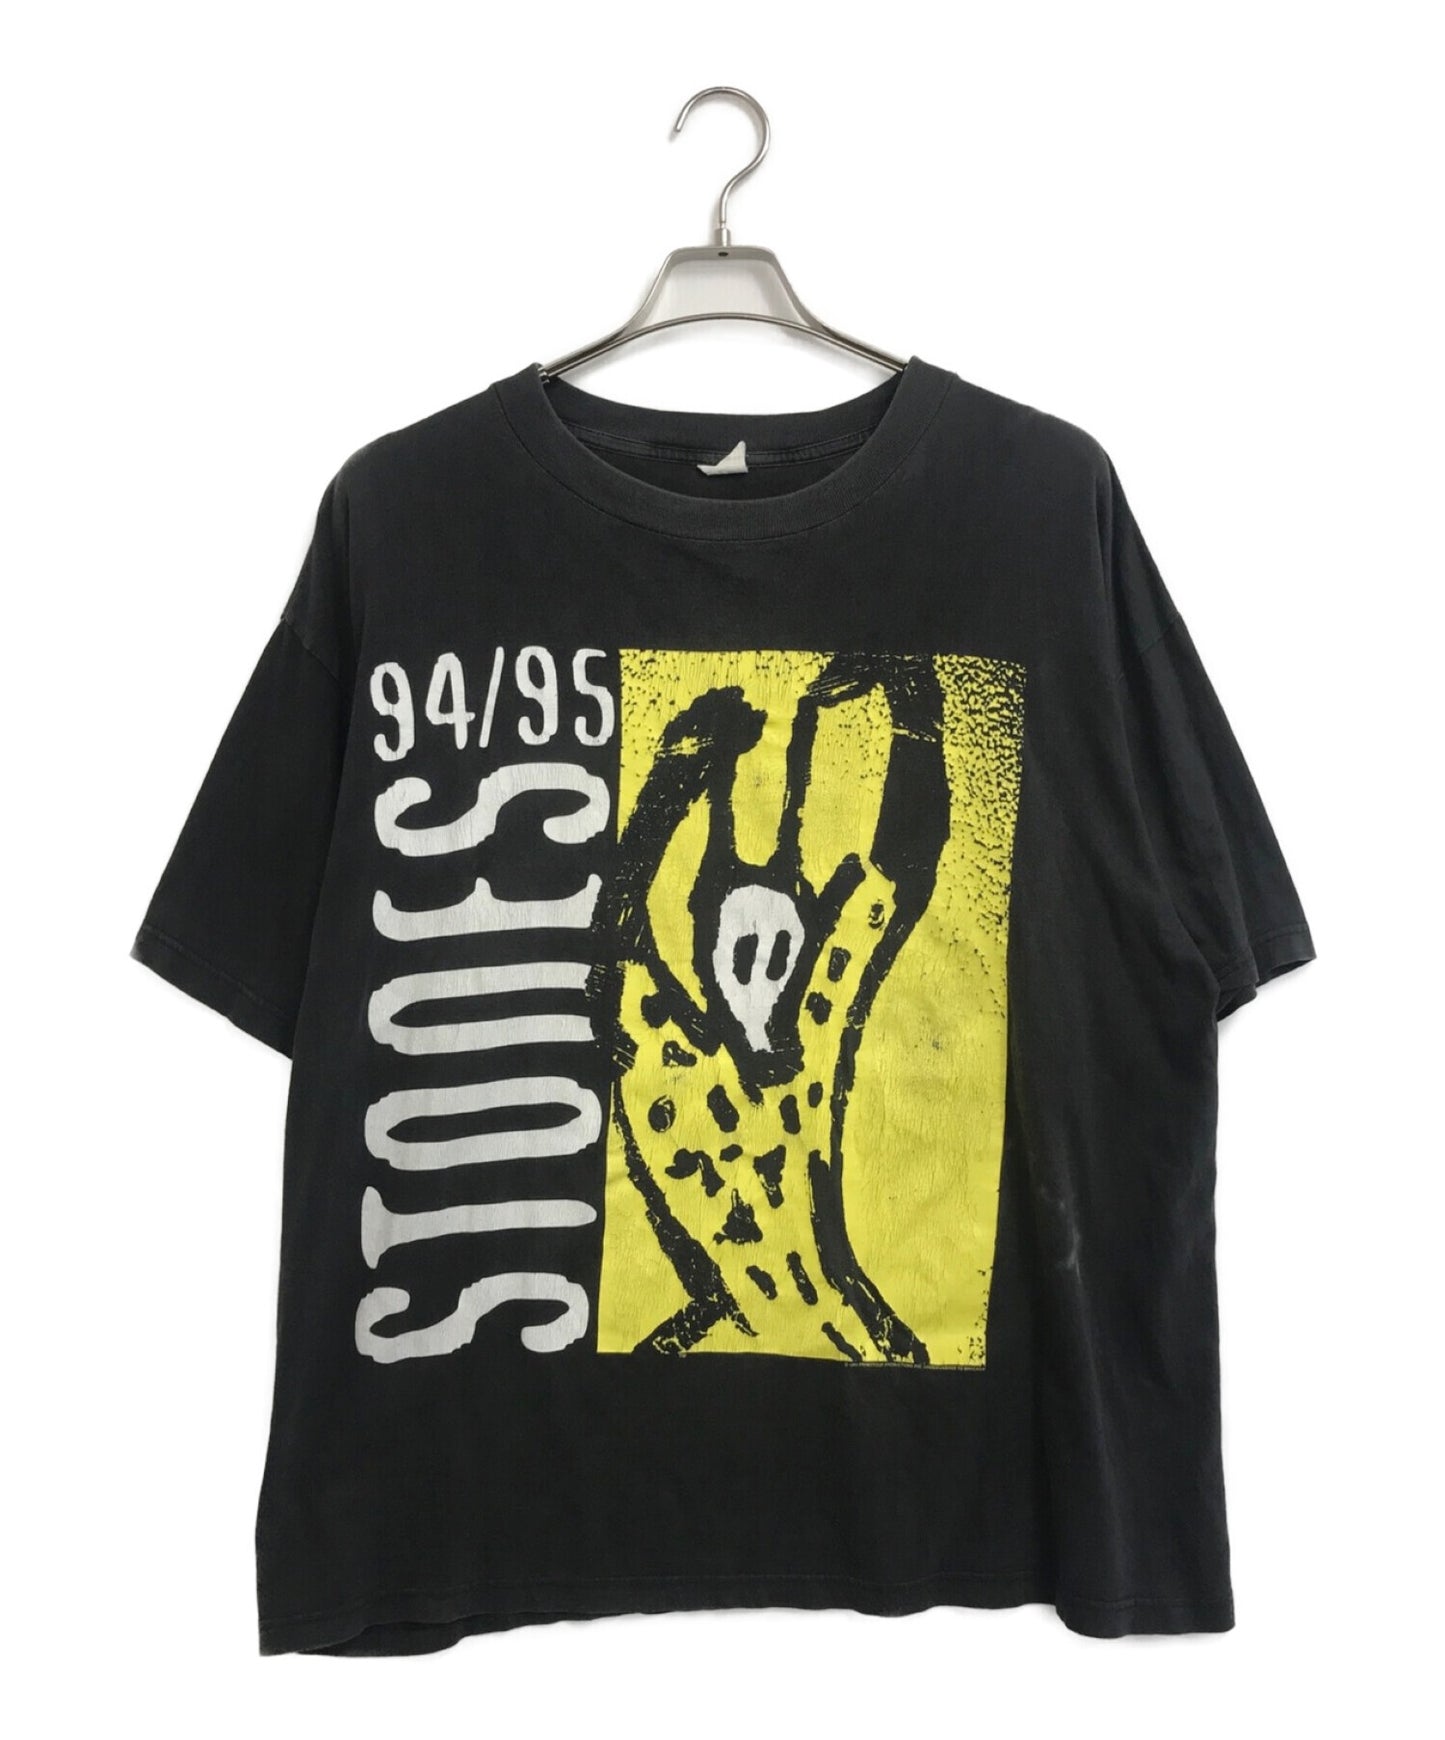 Rolling Stones ローリングストーンズ 94,95 Tシャツ-